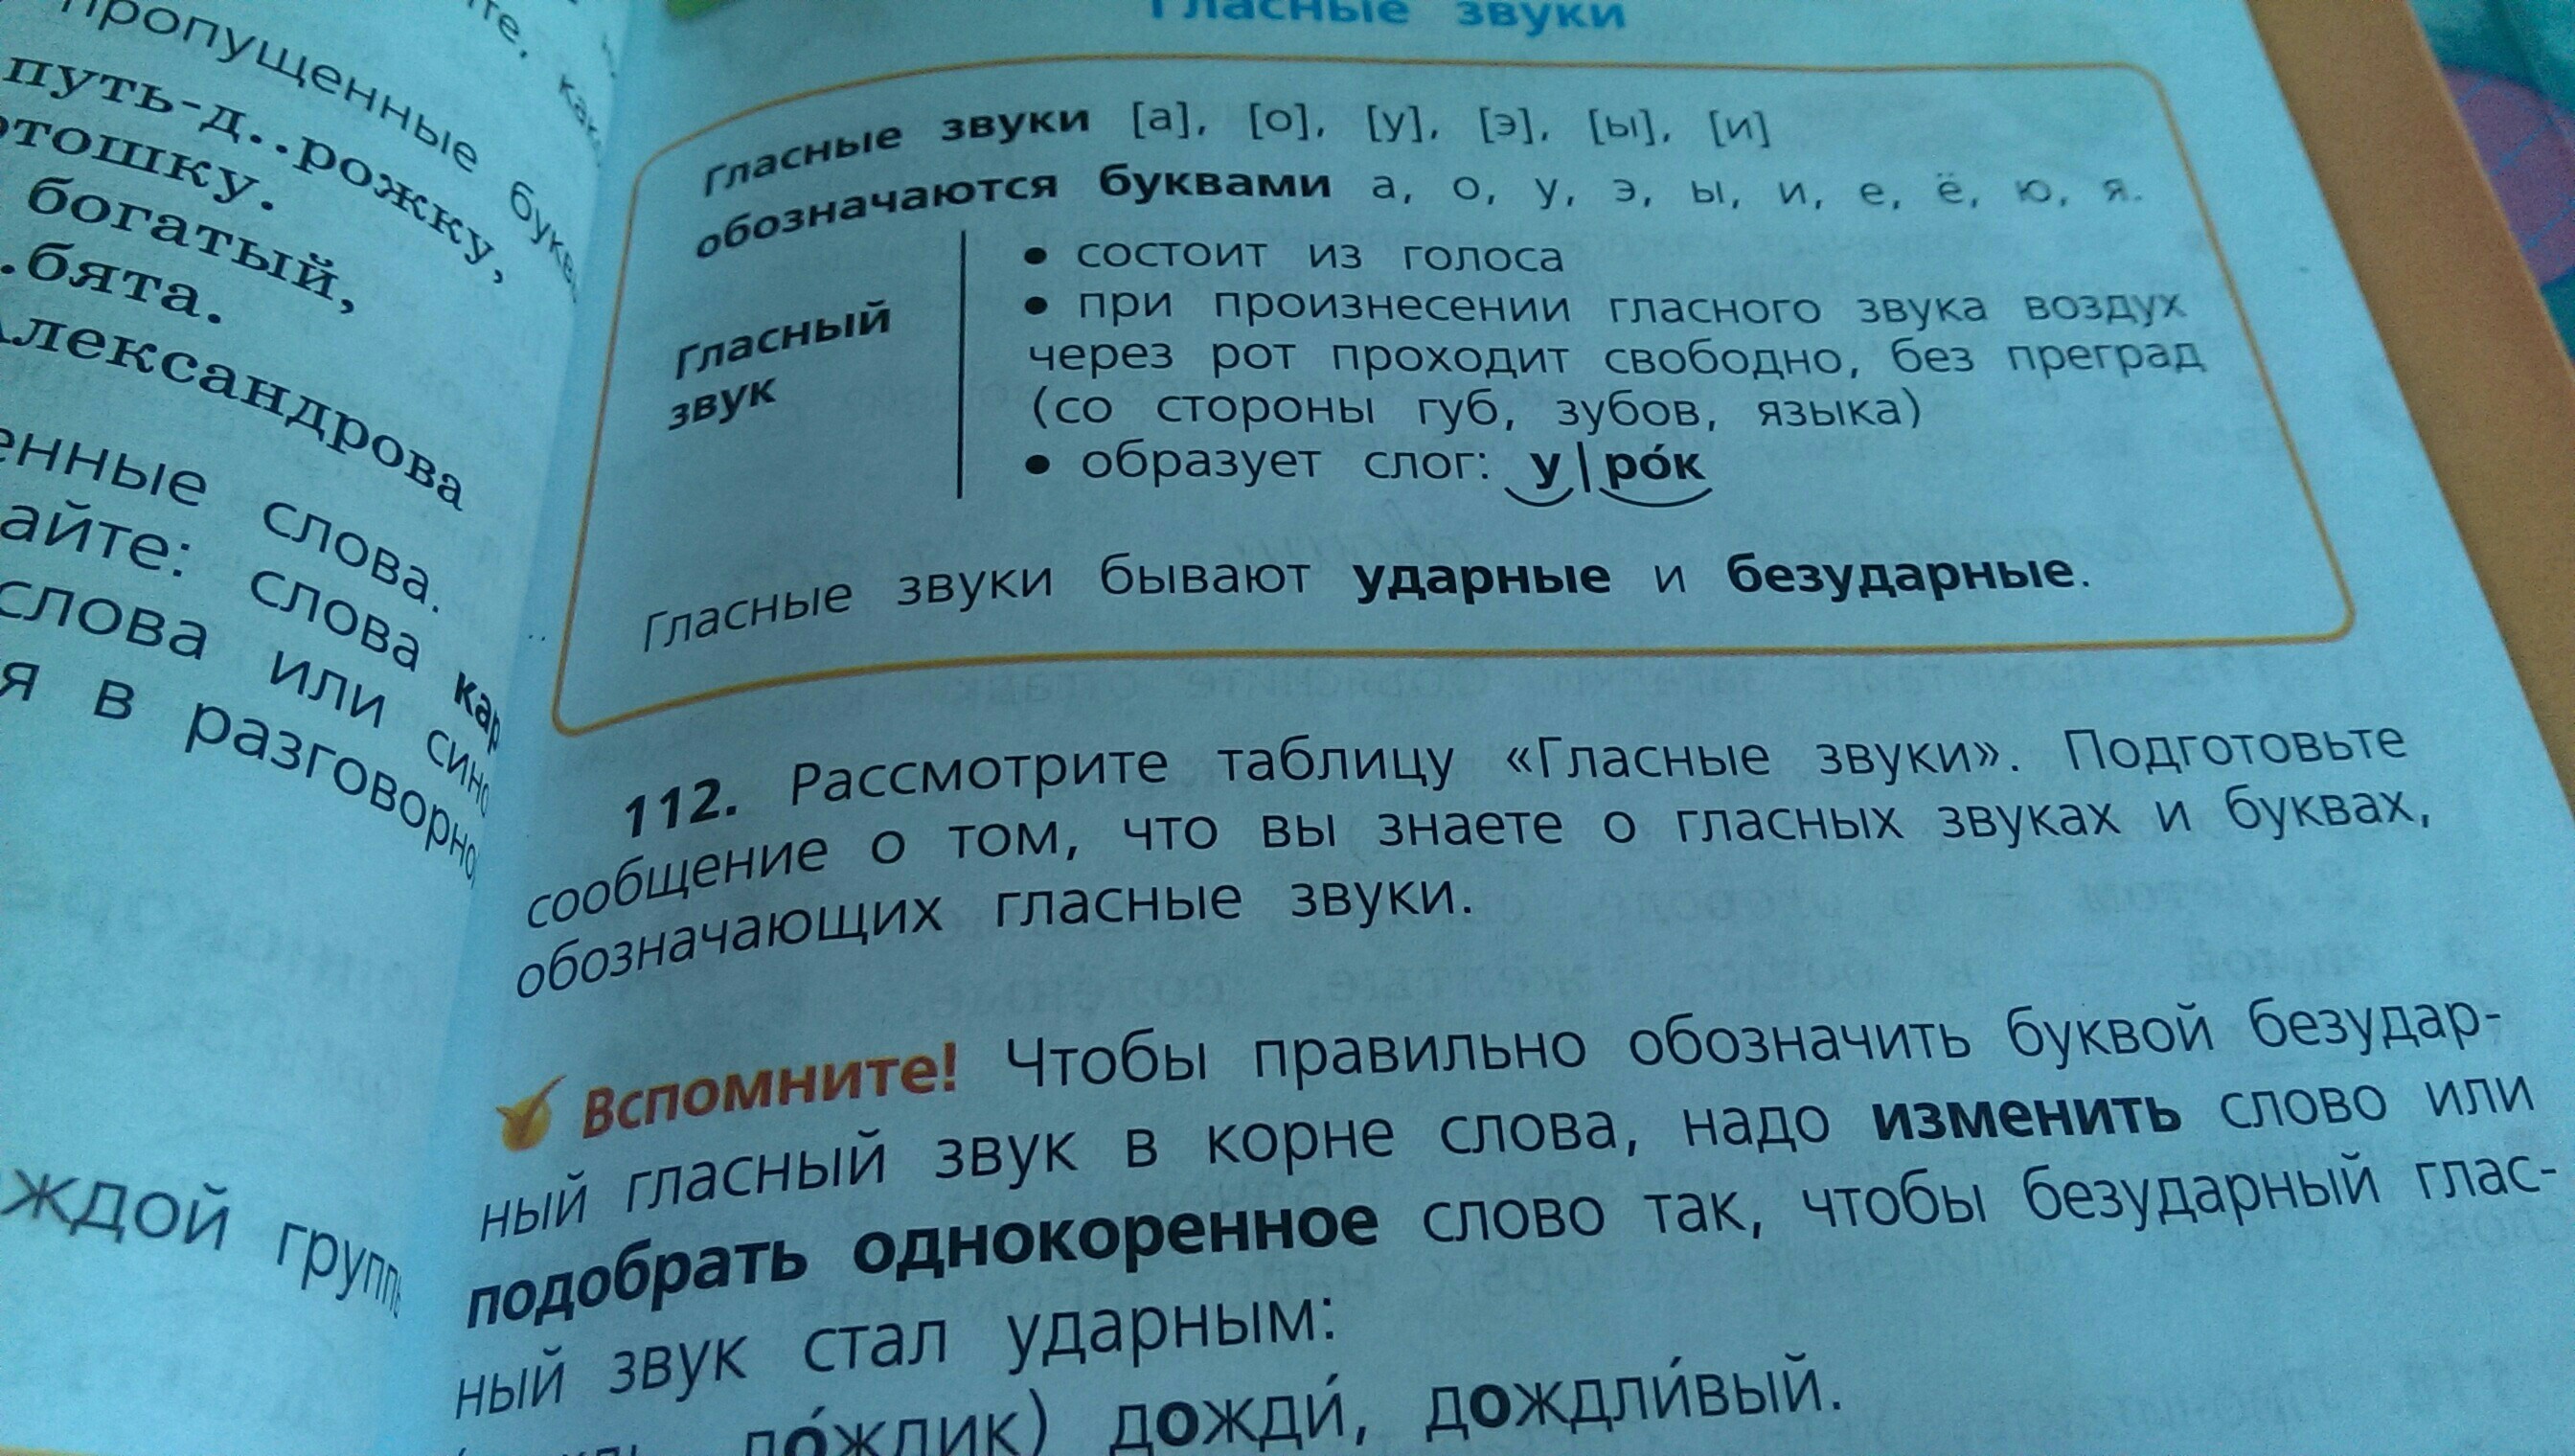 Русский язык стр 112 упр 191